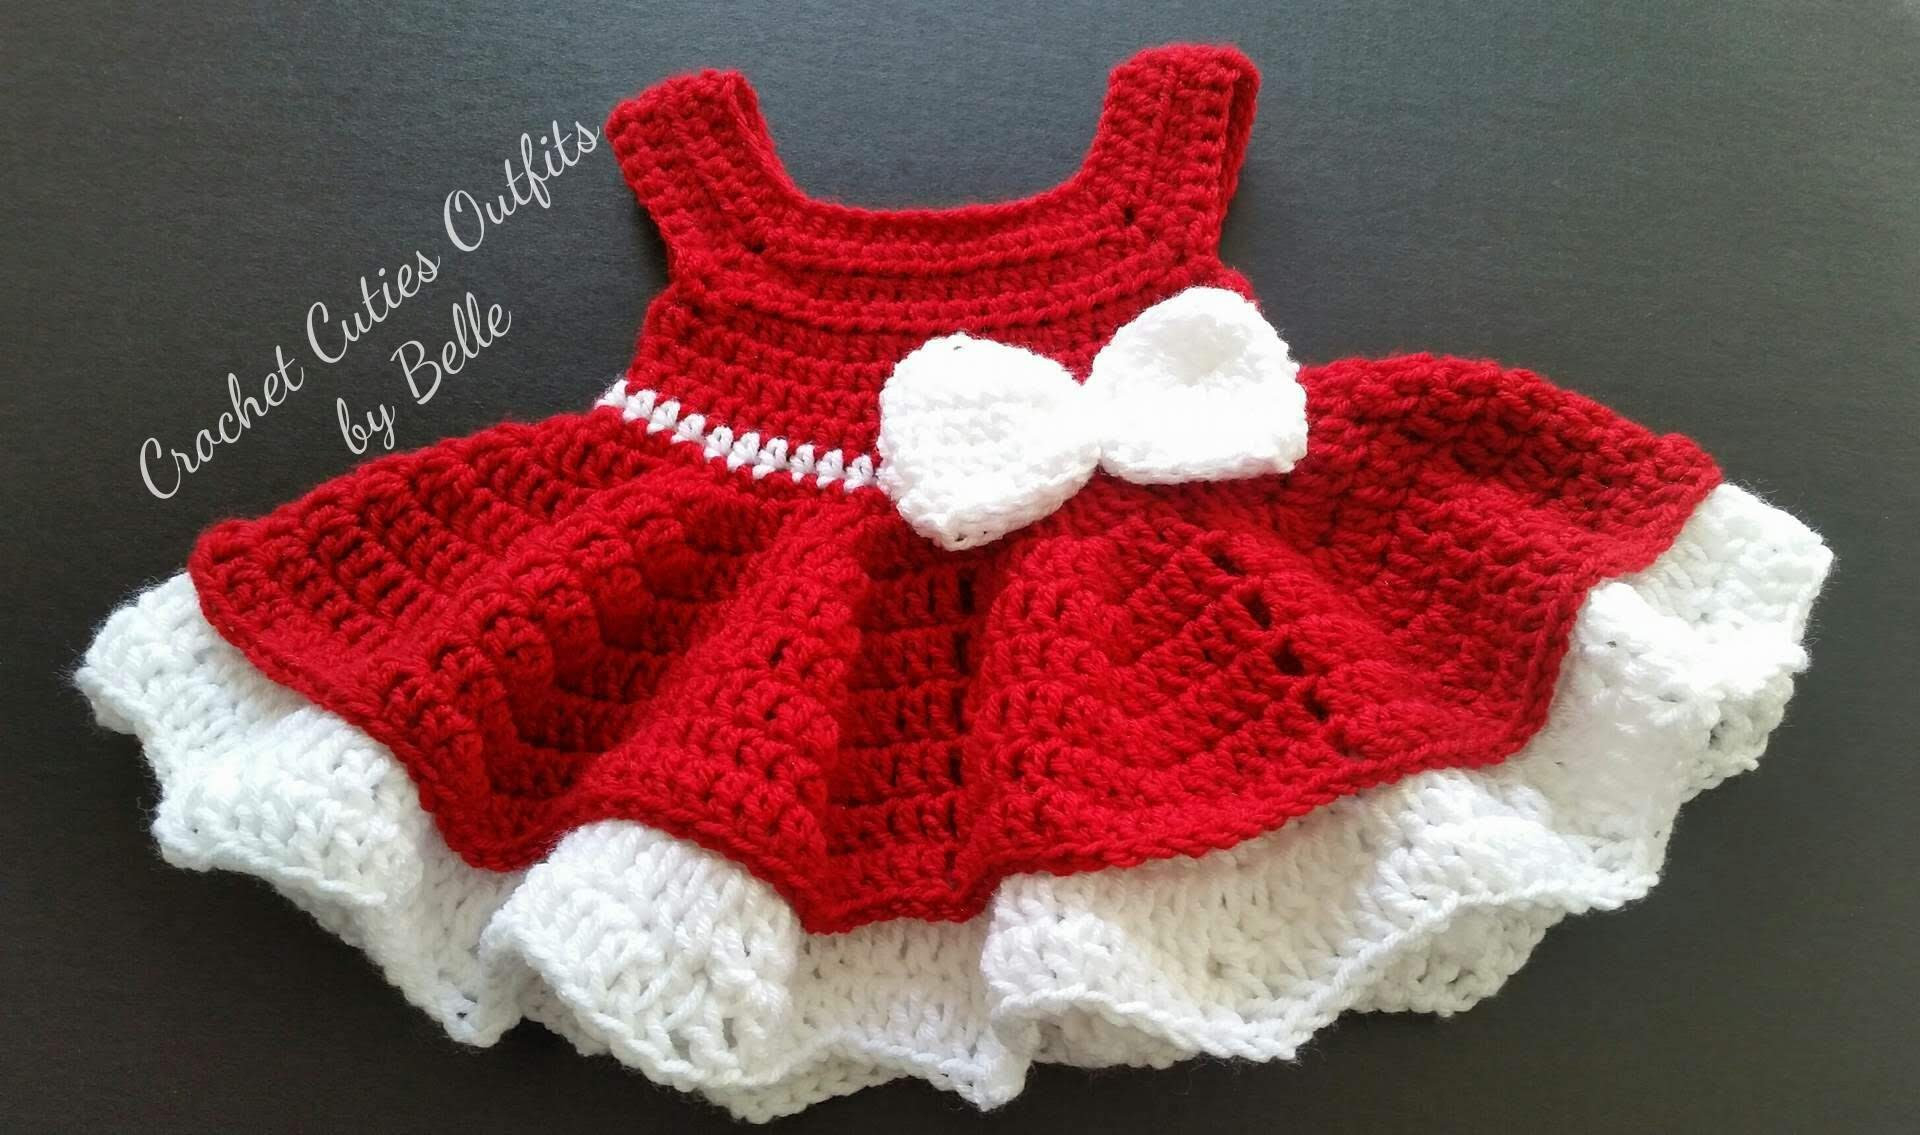 Crochet Baby Dress Free Pattern Crochet Ba Dress Pattern Free Crochet Pattern Newborn Ba Etsy